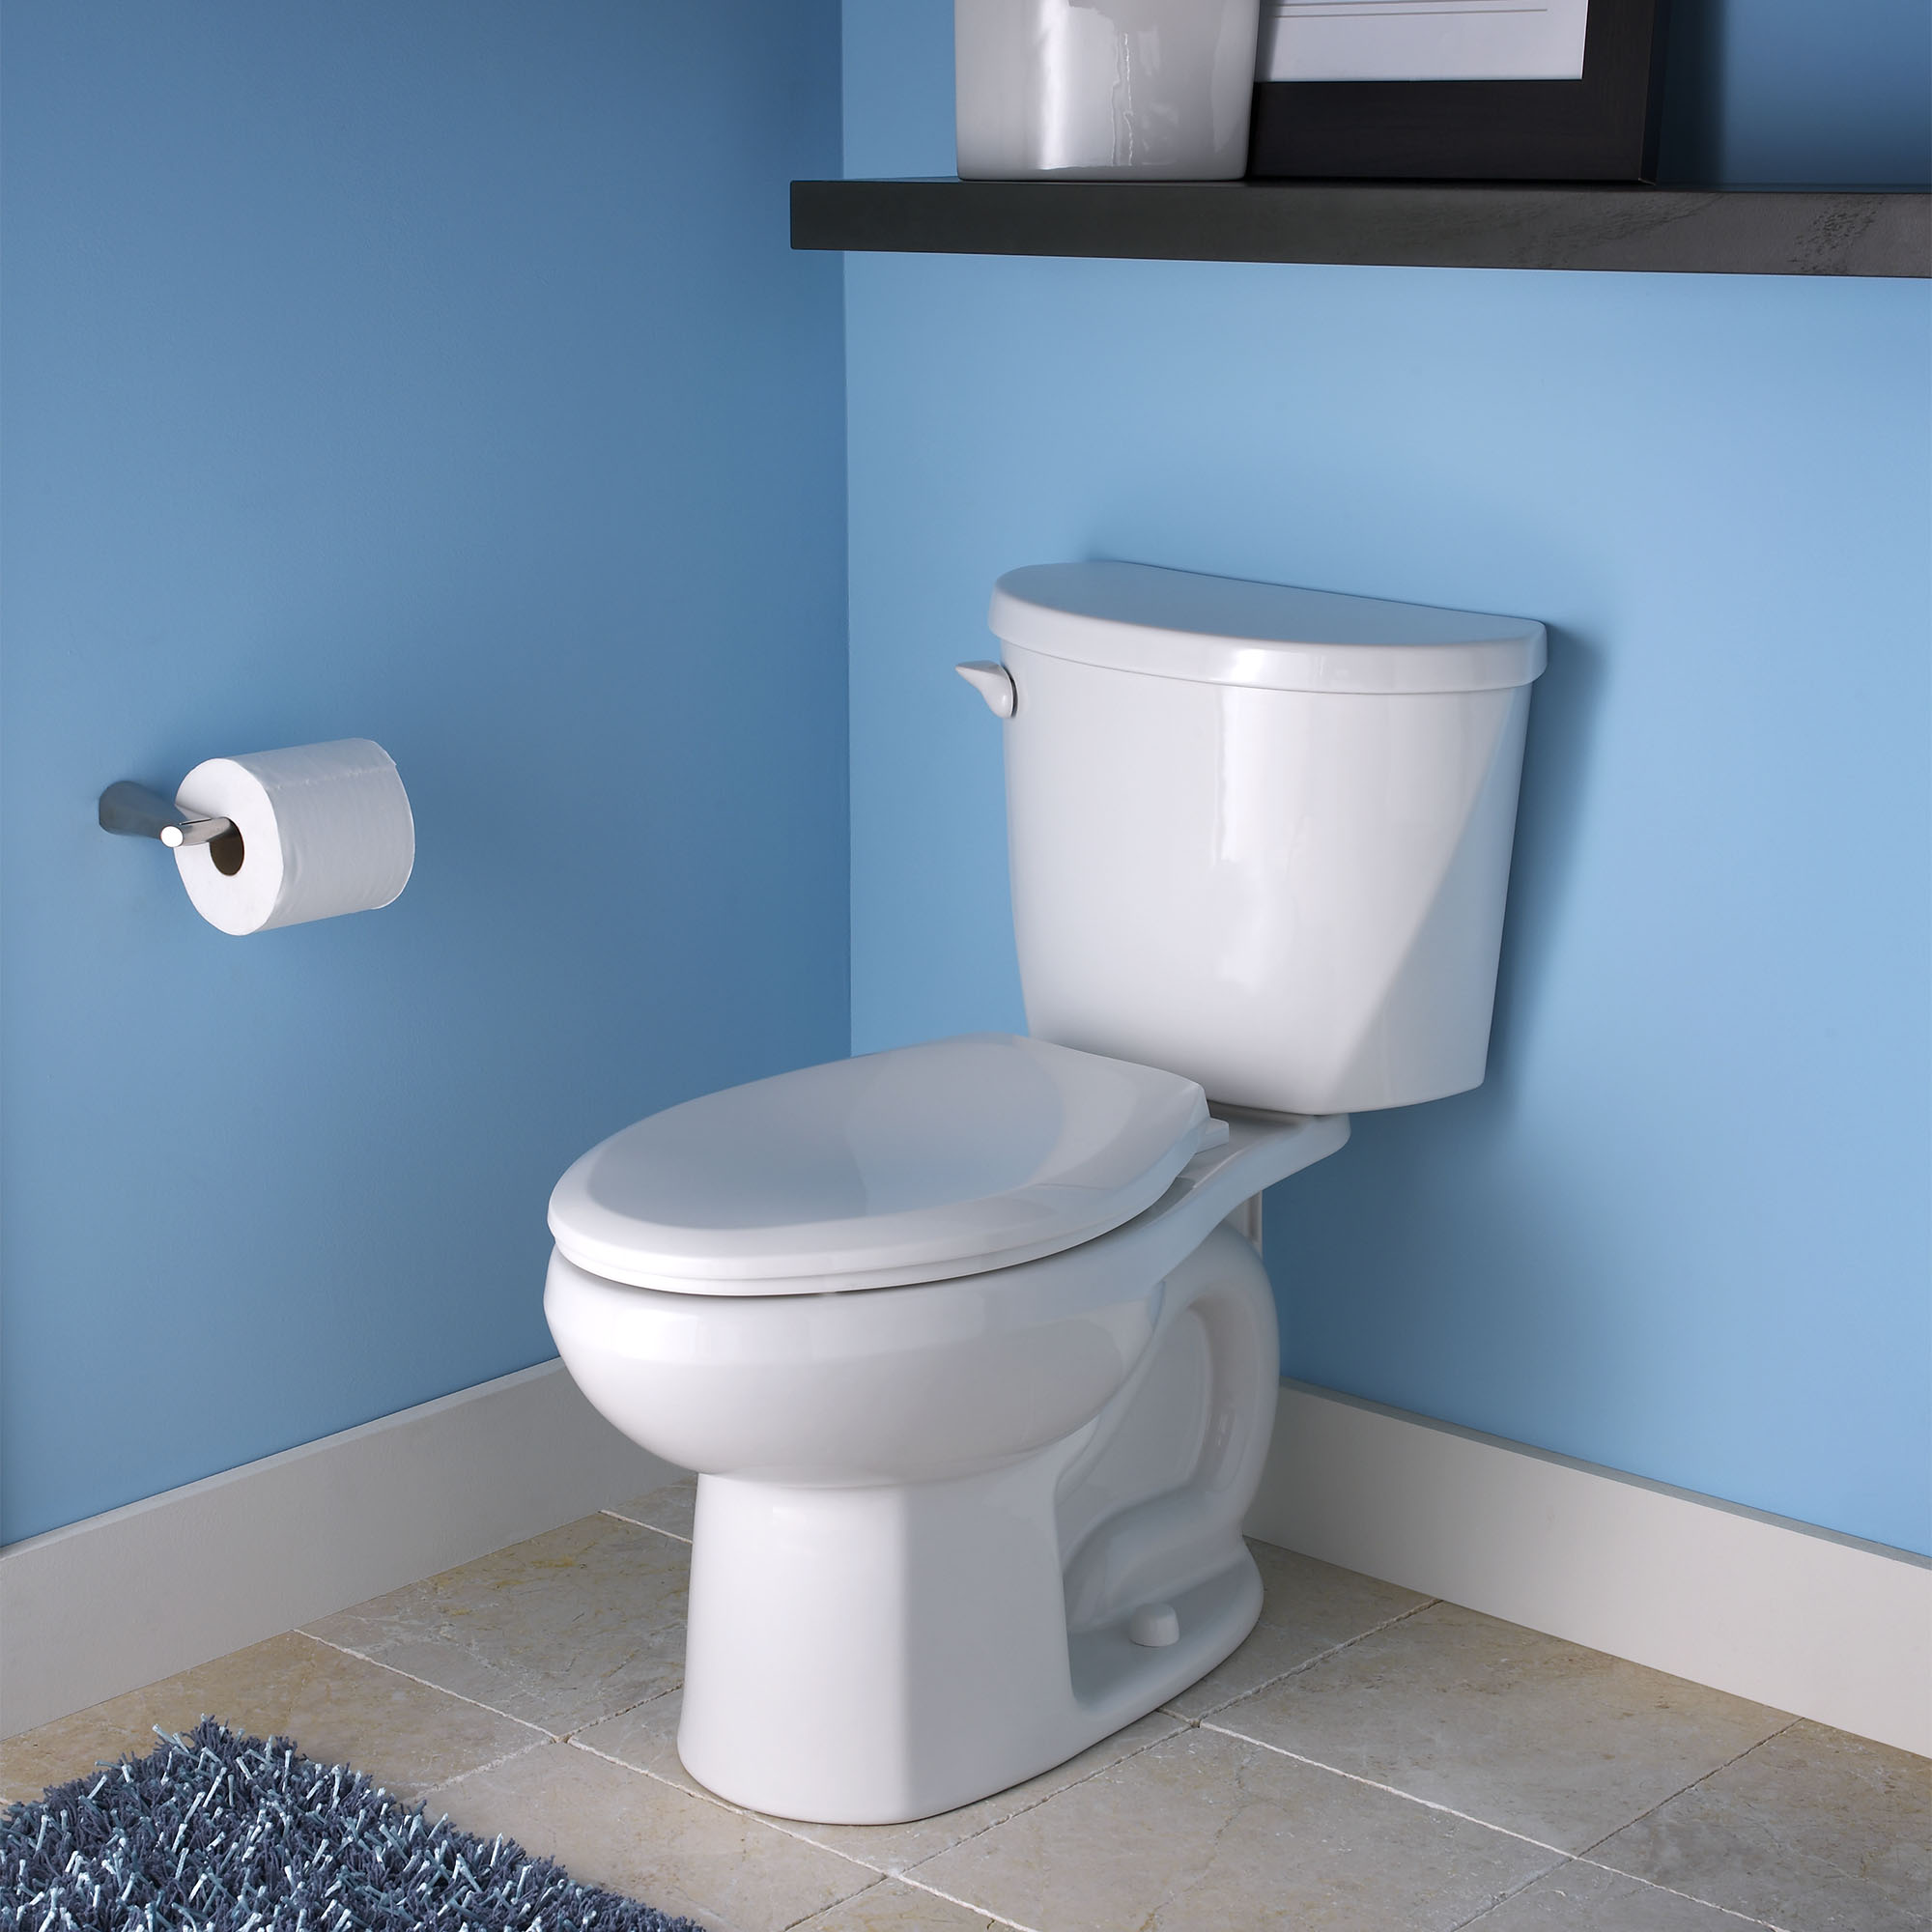 Toilette Colony, 2 pièces, 1,6 gpc/6,0 lpc, à cuvette allongée à hauteur de chaise, sans siège, levier de déclenchement à droite, sans siège